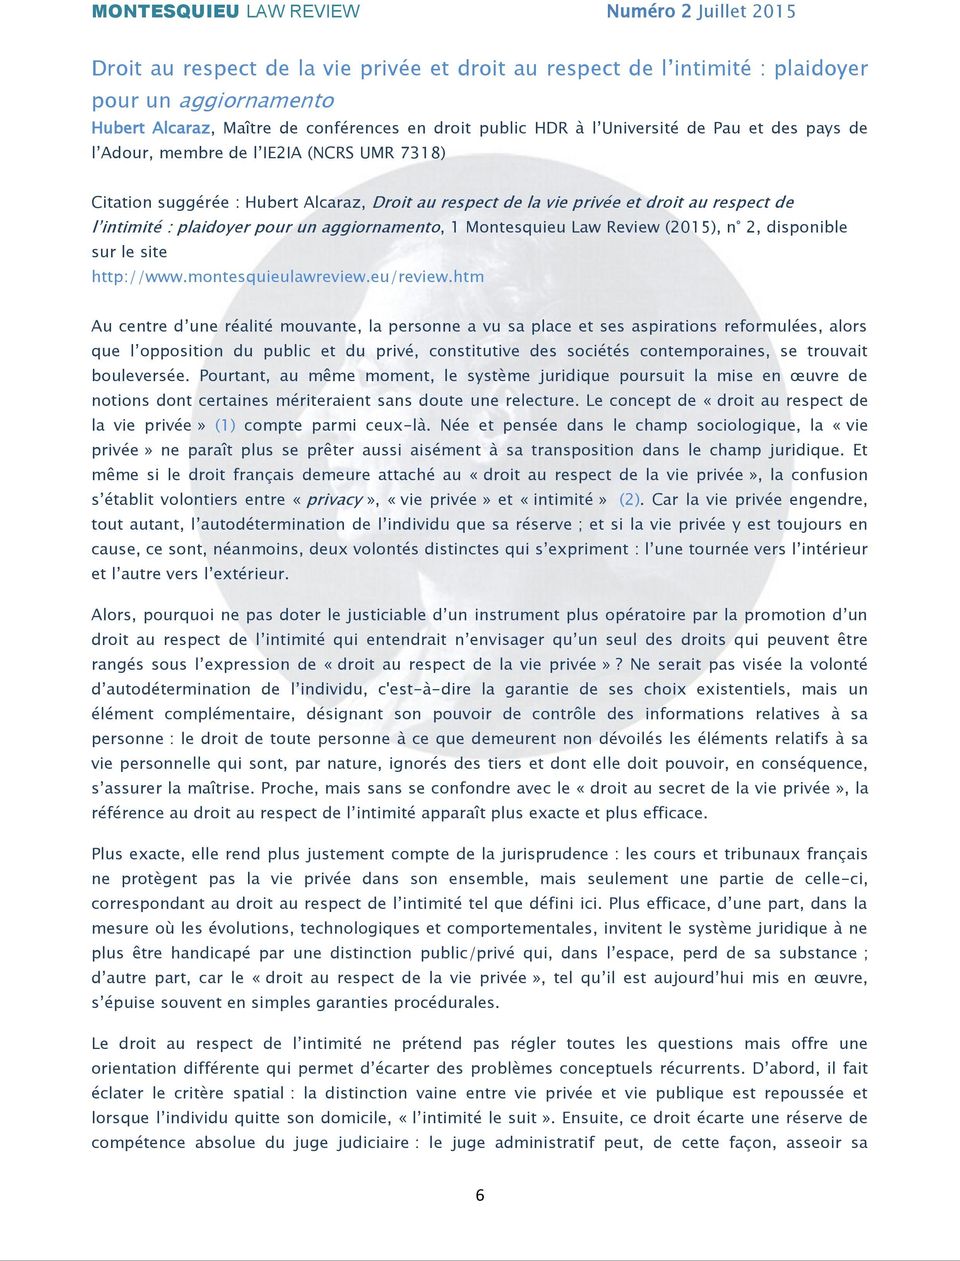 plaidoyer pour un aggiornamento, 1 Montesquieu Law Review (2015), n 2, disponible sur le site http://www.montesquieulawreview.eu/review.